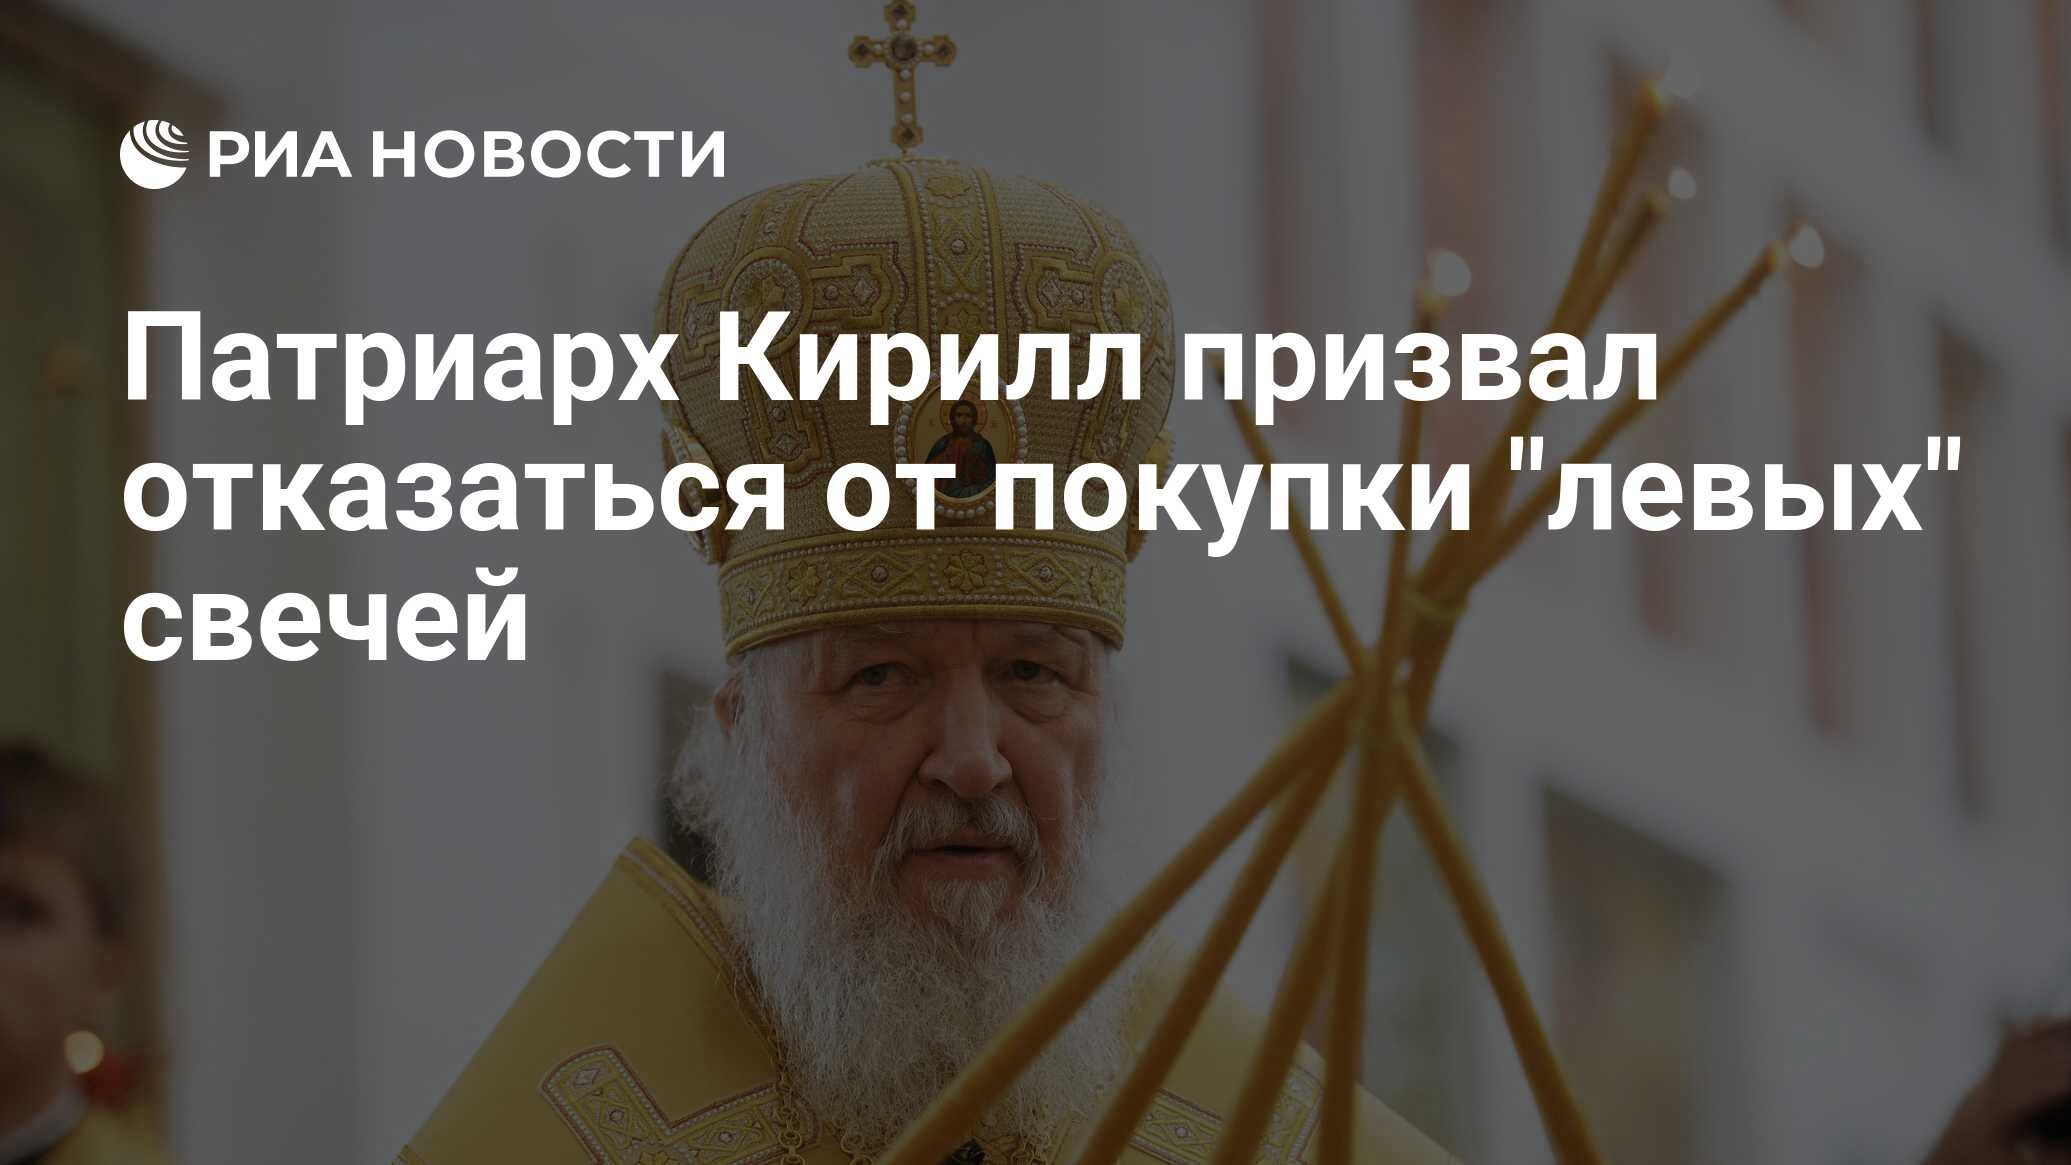 Патриарх Кирилл призвал отказаться от покупки "левых" свечей - РИА Новости, 24.12.2020